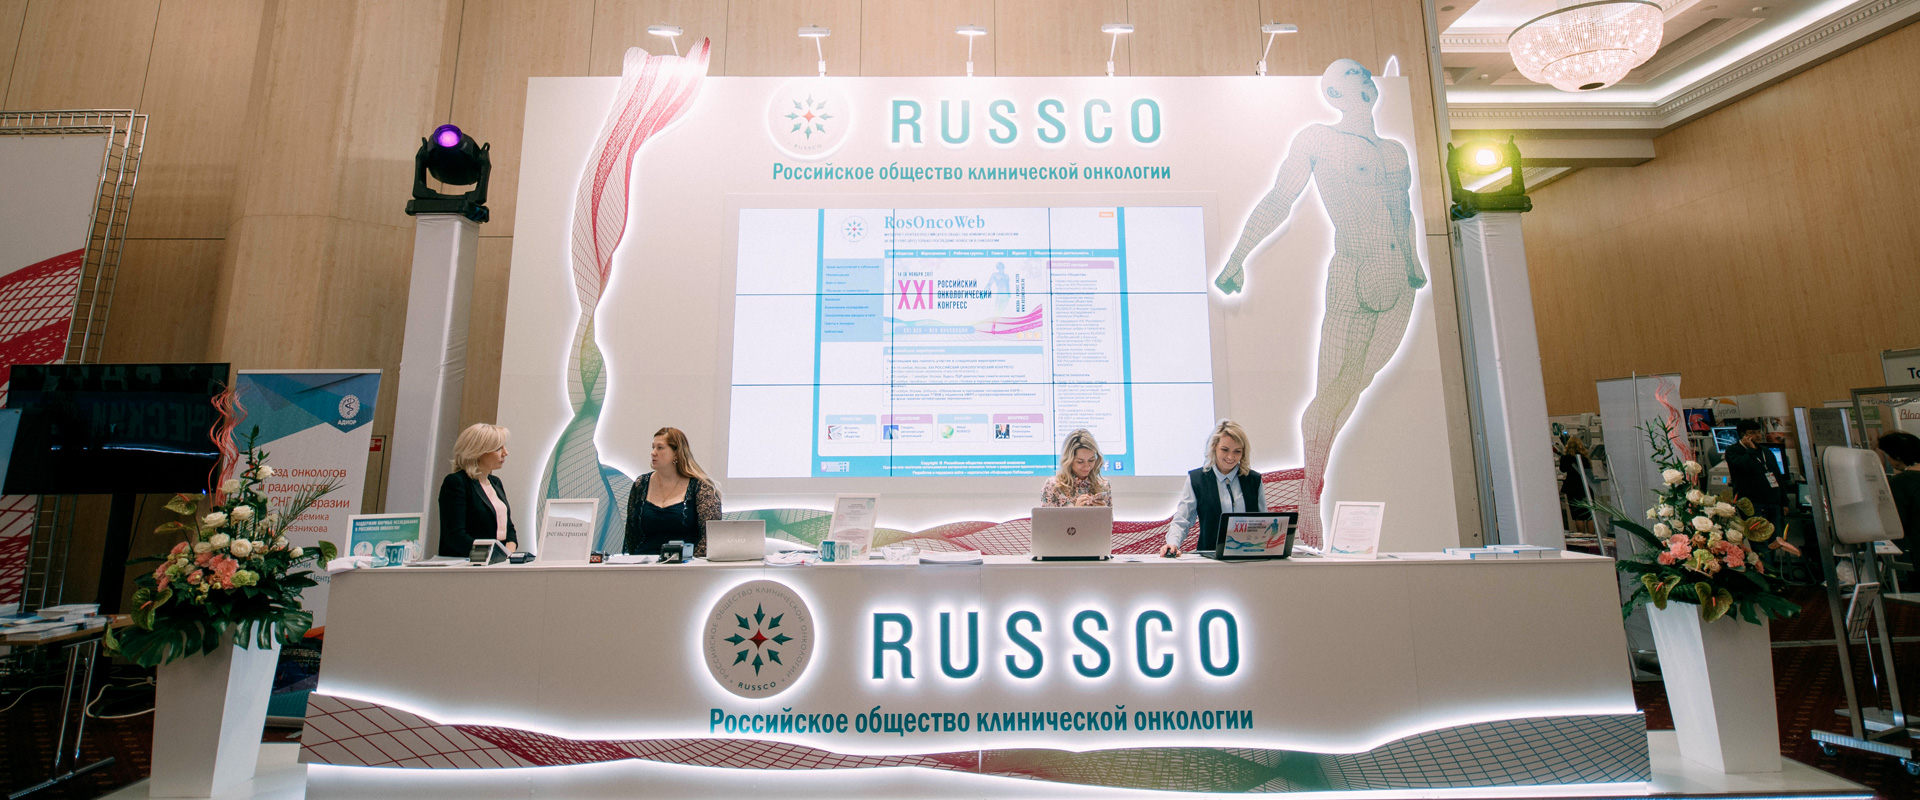 >Российское общество клинической онкологии (RUSSCO)